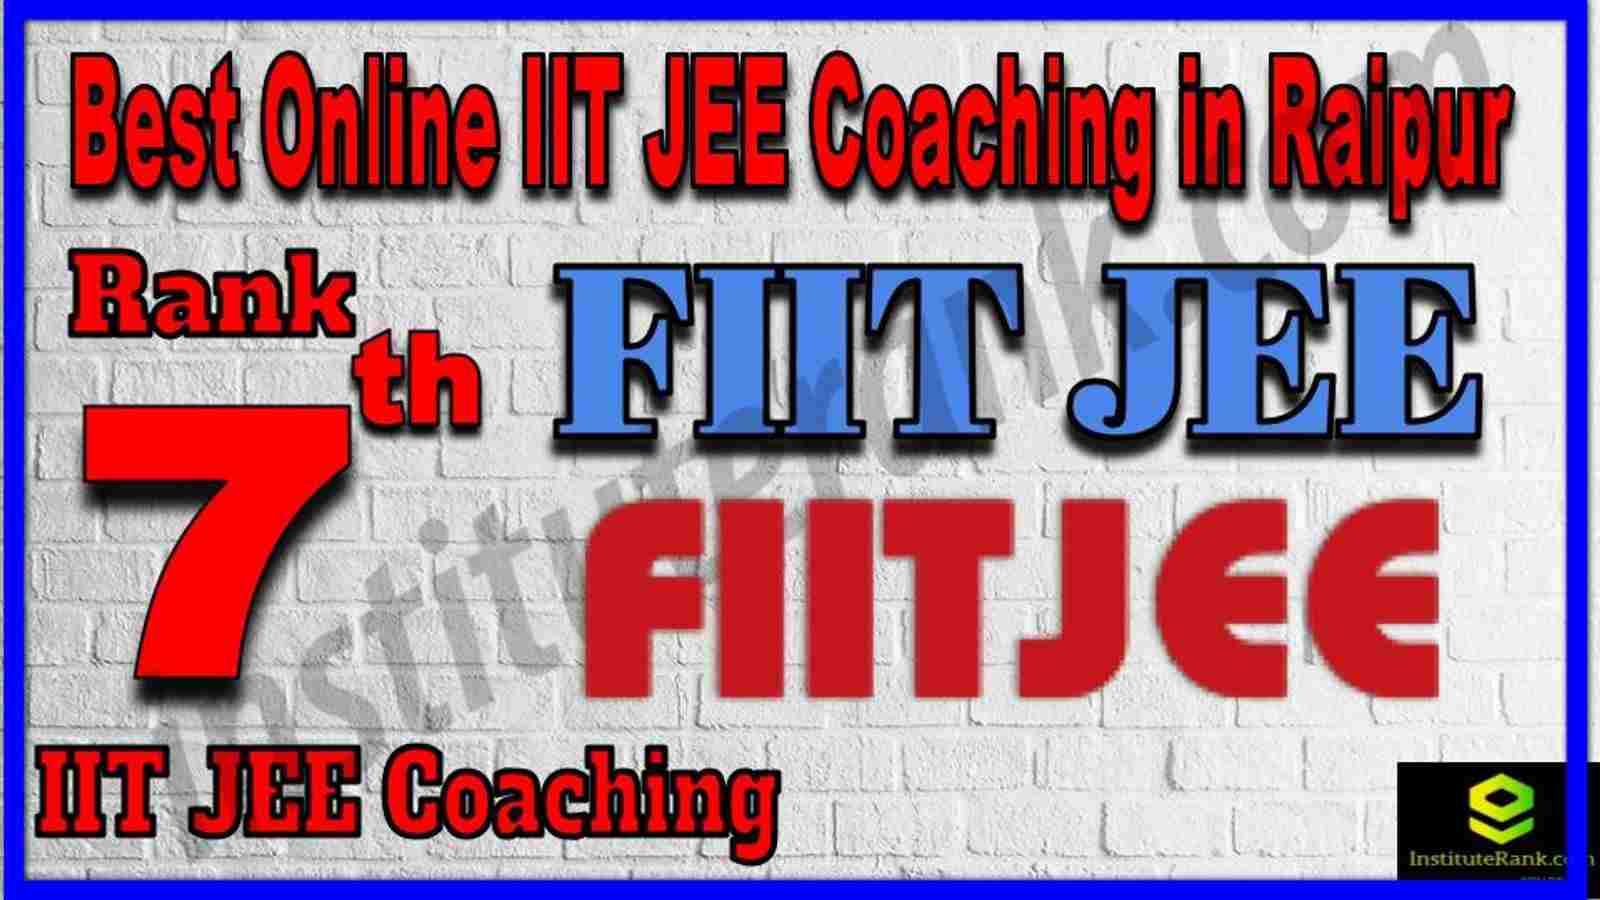 Rank 7th Best Online IIT JEE Coaching in Raipur